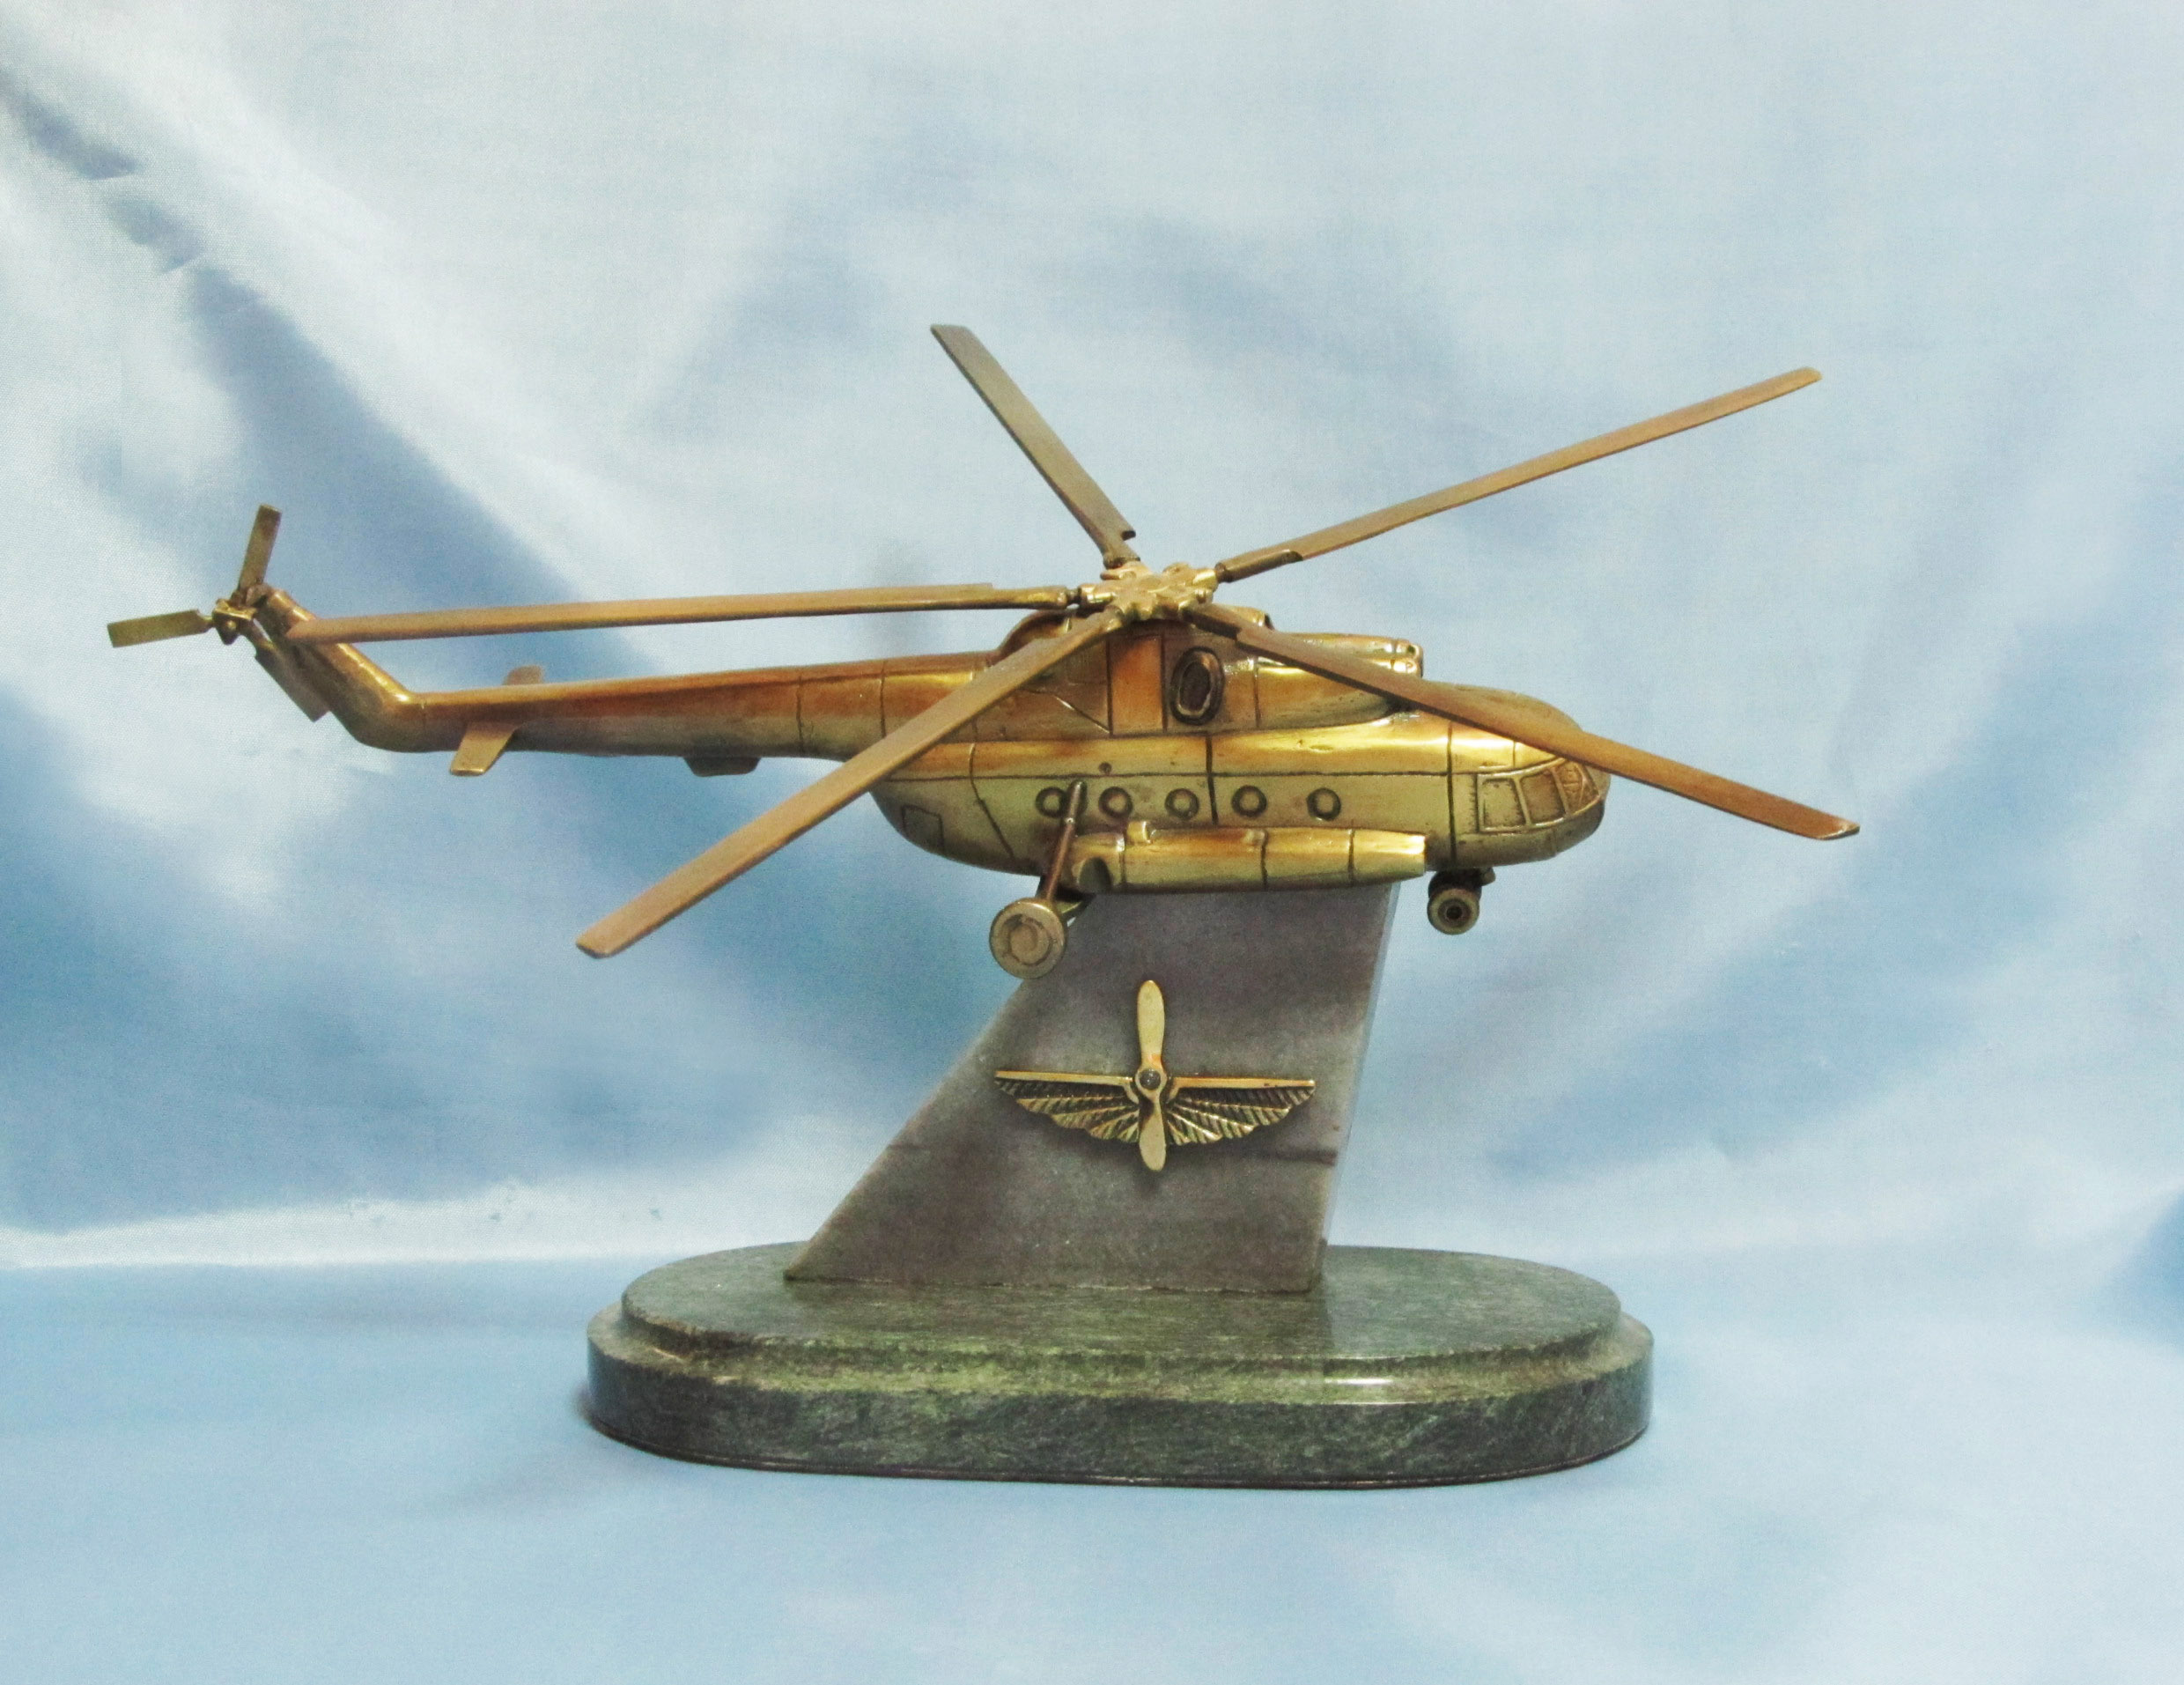 Сувенир "Вертолет" (вертолет собран из 13 деталей)